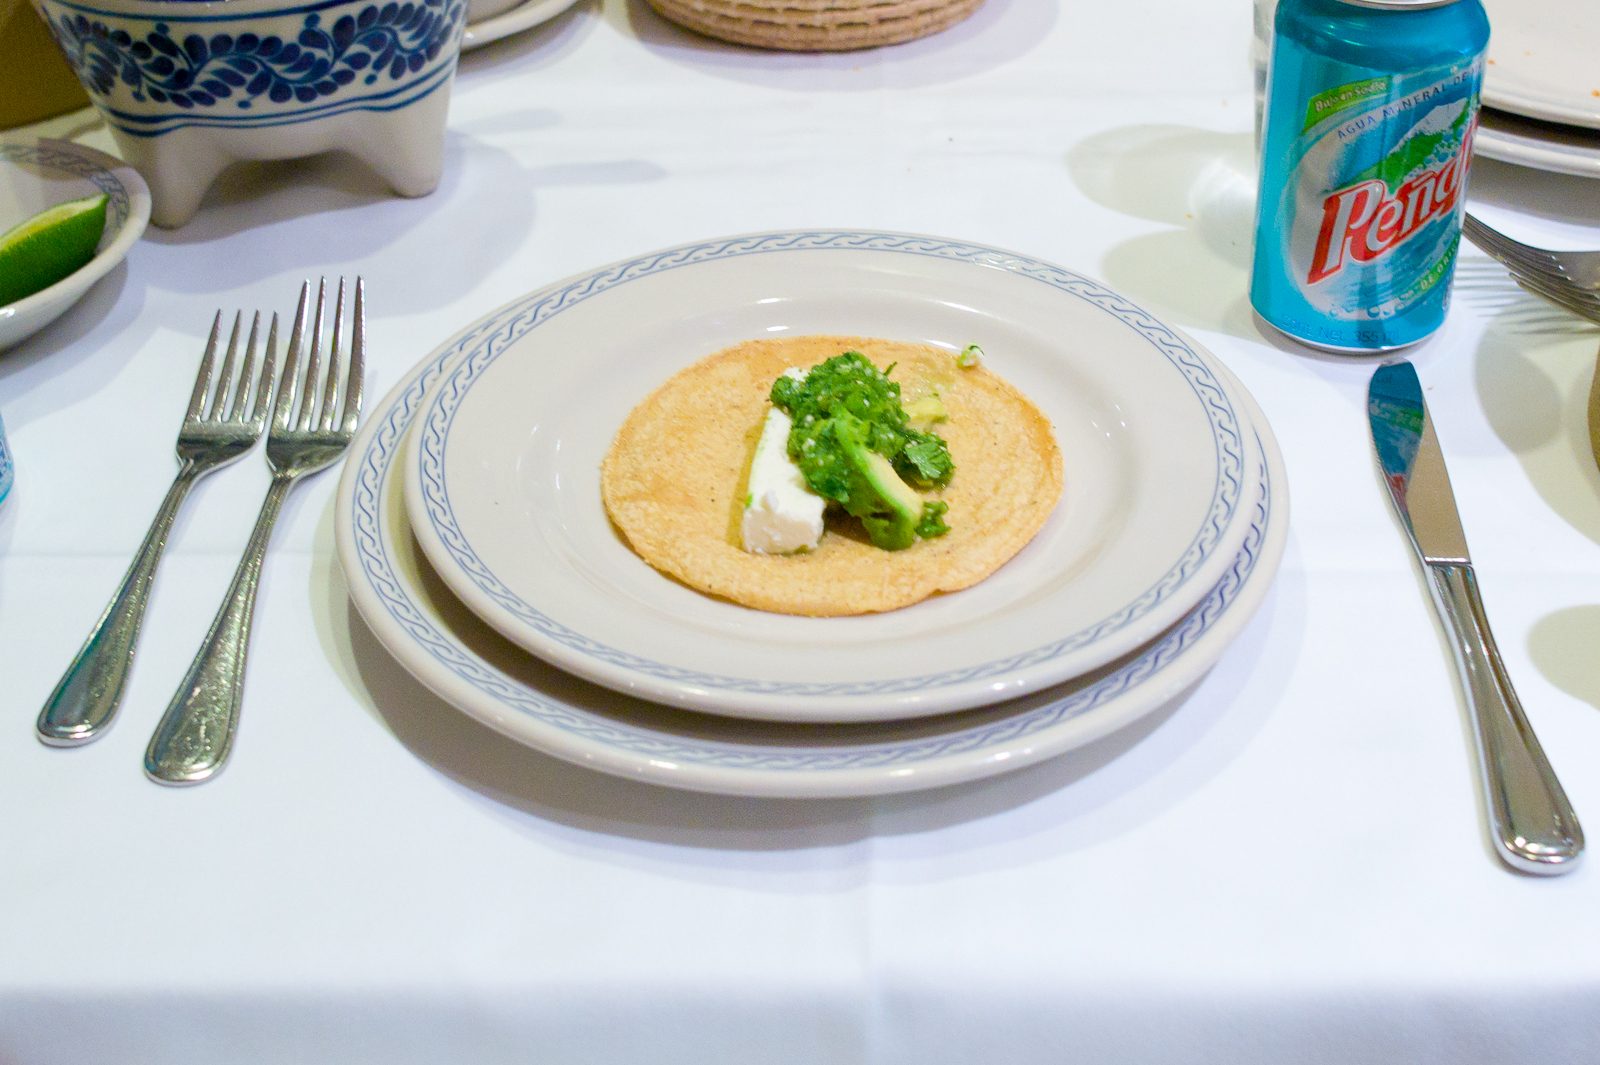 A tortilla of avocado, queso fresco, and salsa verde